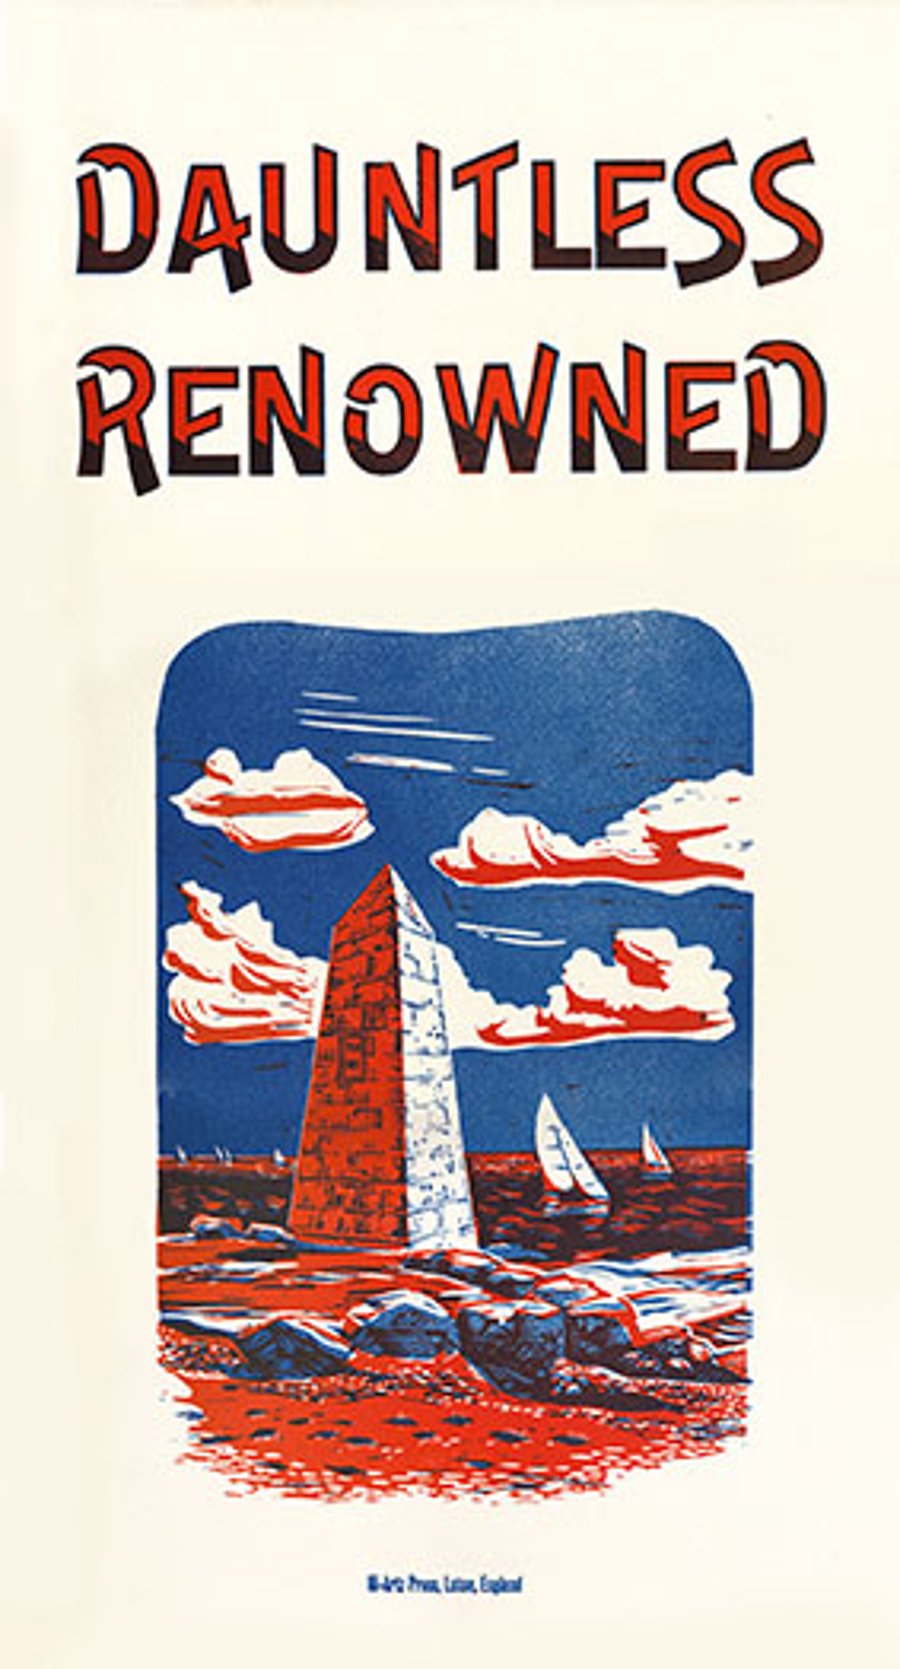 "Dauntless Renowned" Letterpress & Lino-Cut Poster. 